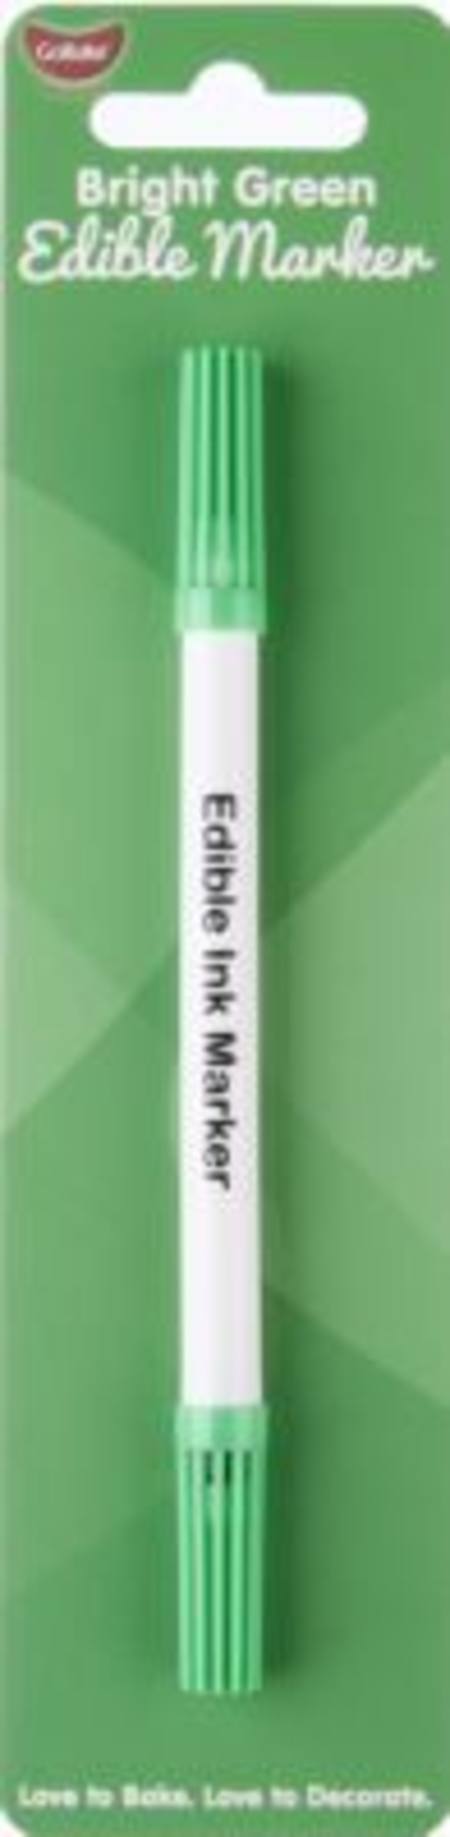 Buy Edible Marker Pen Bright Green in NZ. 